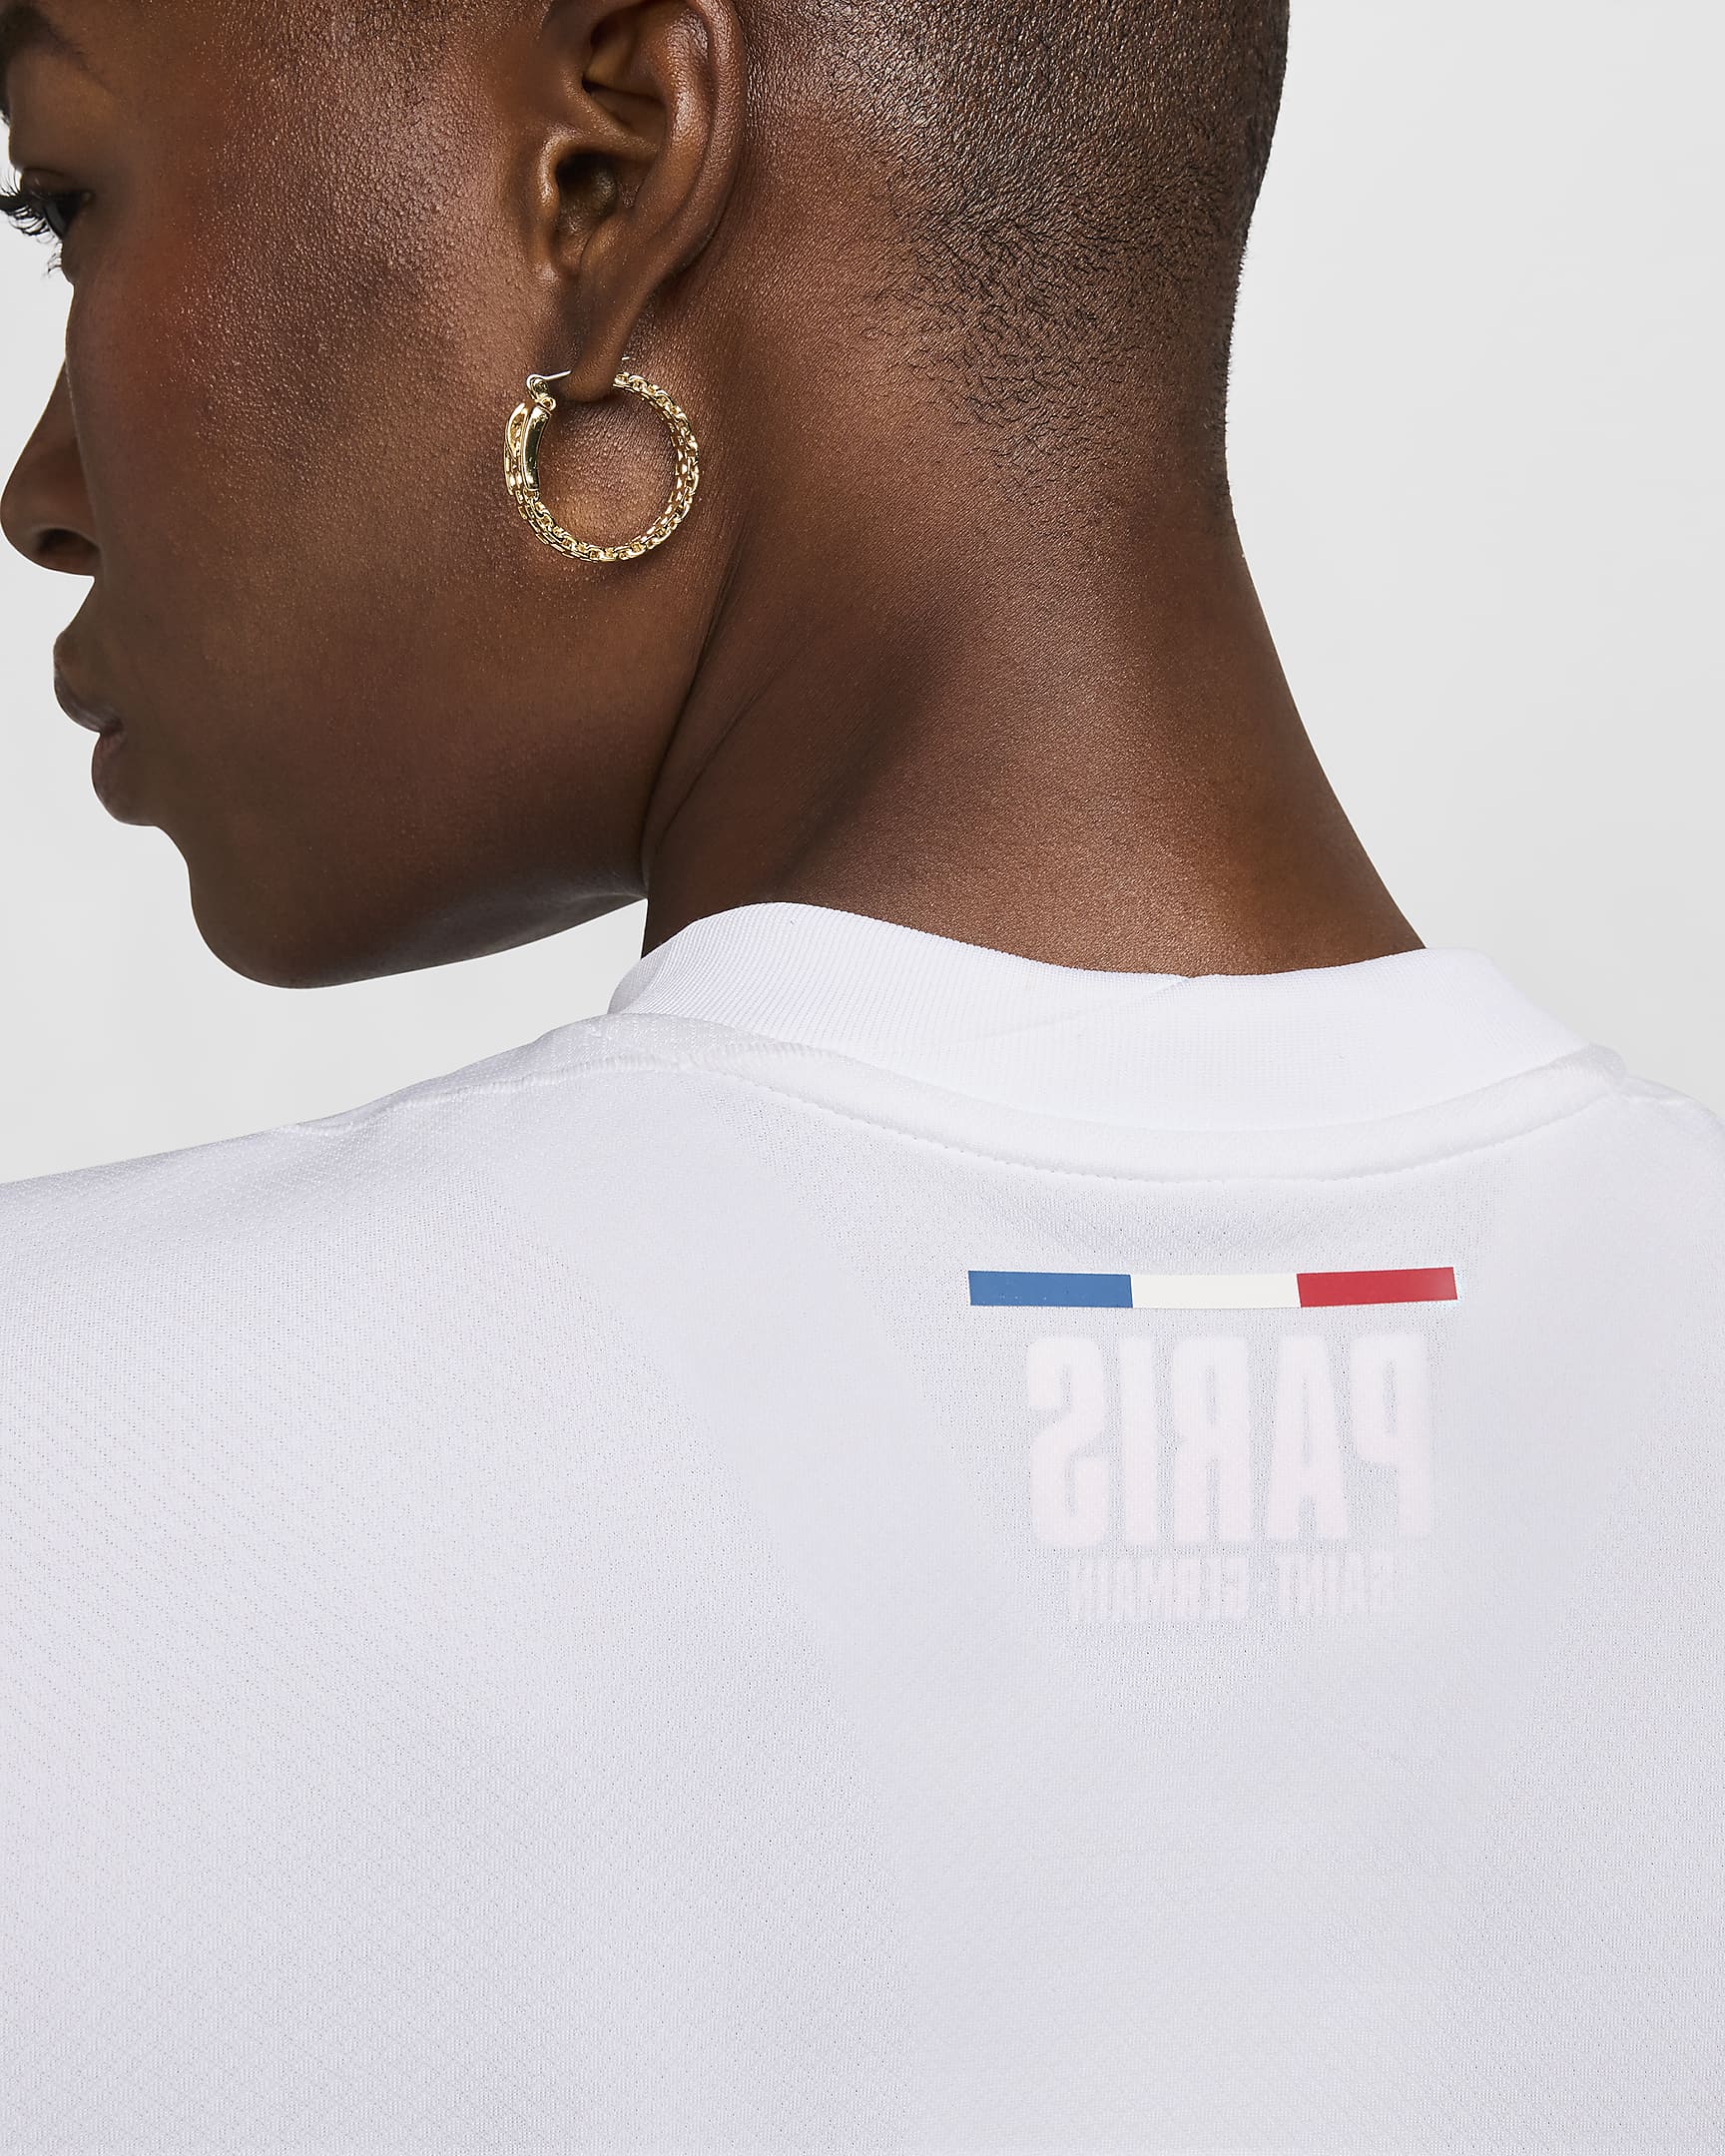 Paris Saint-Germain 2024/25 Stadium Away Women's Nike Dri-FIT Football Replica Shirt - White/Midnight Navy/University Red/Midnight Navy